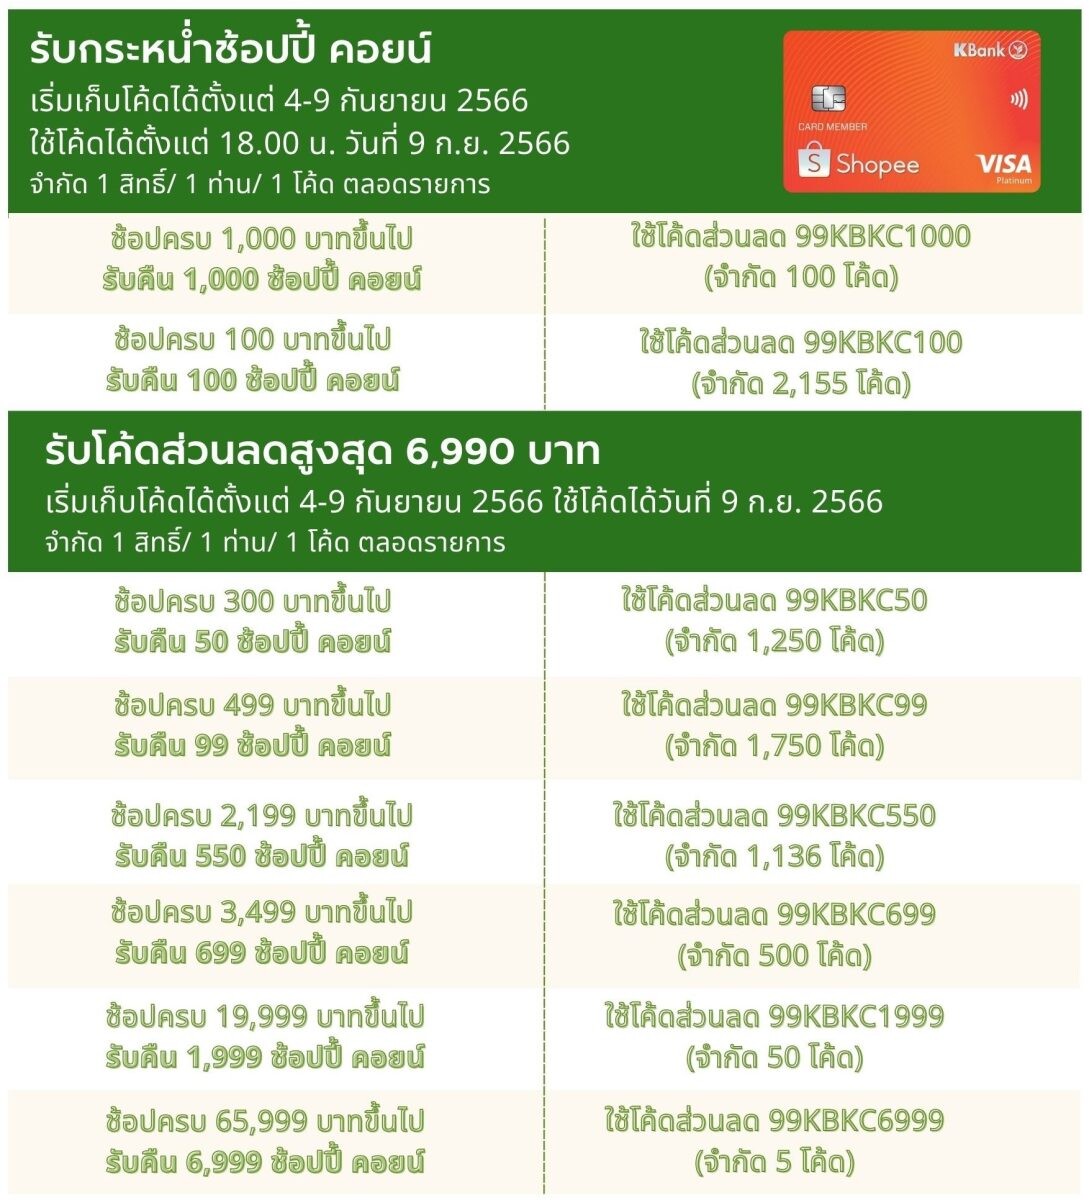 บัตรเครดิตกสิกรไทย - ช้อปปี้ จัดโปรคุ้มตัวท็อป 9.9 รับจุกๆ ช้อป 1,000 บาท คืน 1,000 ช้อปปี้ คอยน์ และโค้ดส่วนลดสูงสุด 6,999 บาท